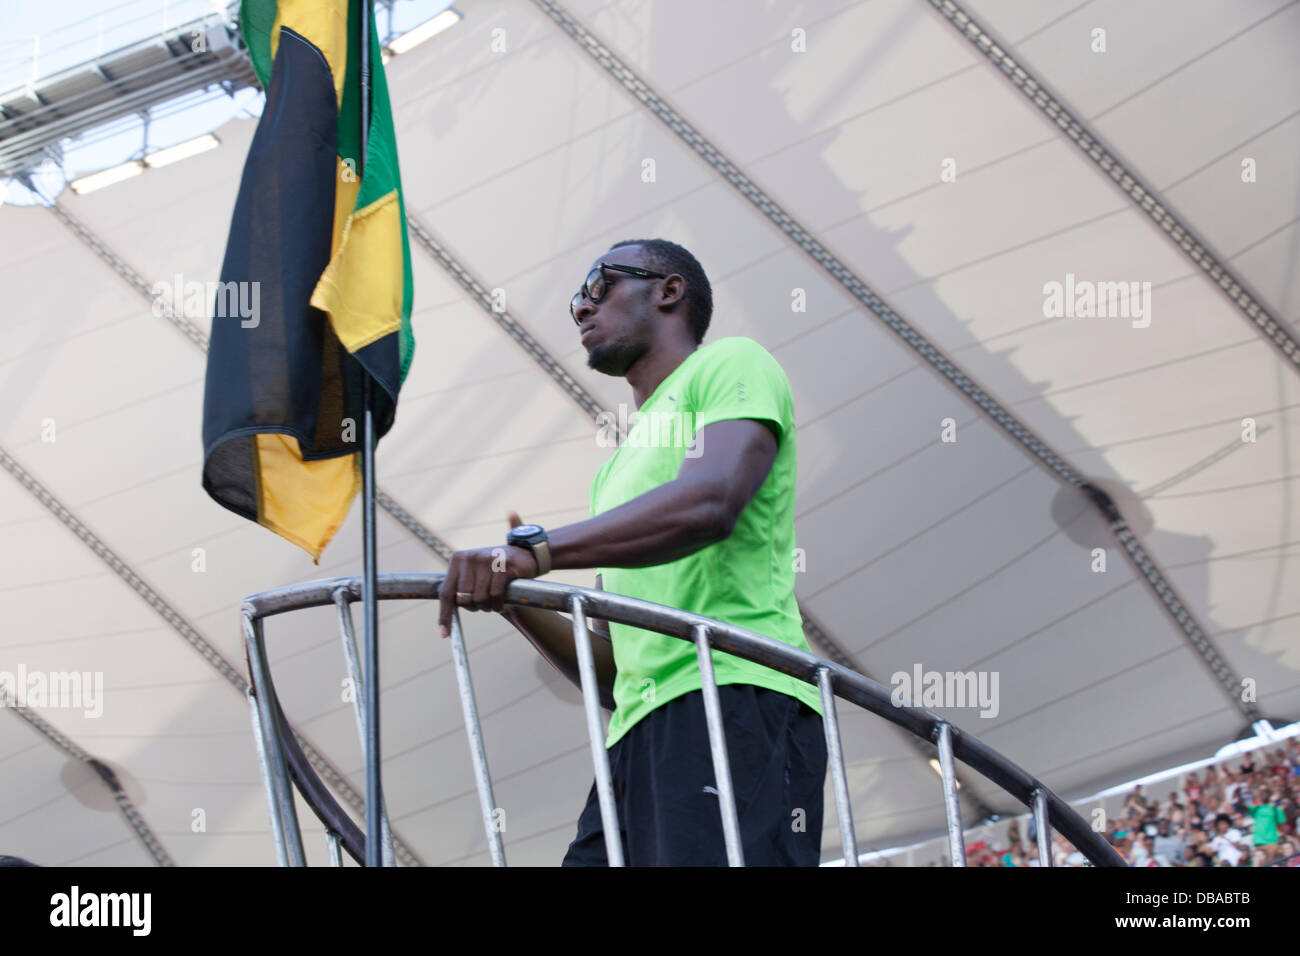 London, UK. 26. Juli 2013. Usain Bolt betritt Olympiastadion auf einer Rakete Gruß Fans. 100m Olympic Champion Usain Bolt steht neben der jamaikanische Flagge auf einer Rakete. Geburtstag Spiele britischen Leichtathletik in London. Foto: Credit: Rebecca Andrews/Alamy Live-Nachrichten Stockfoto